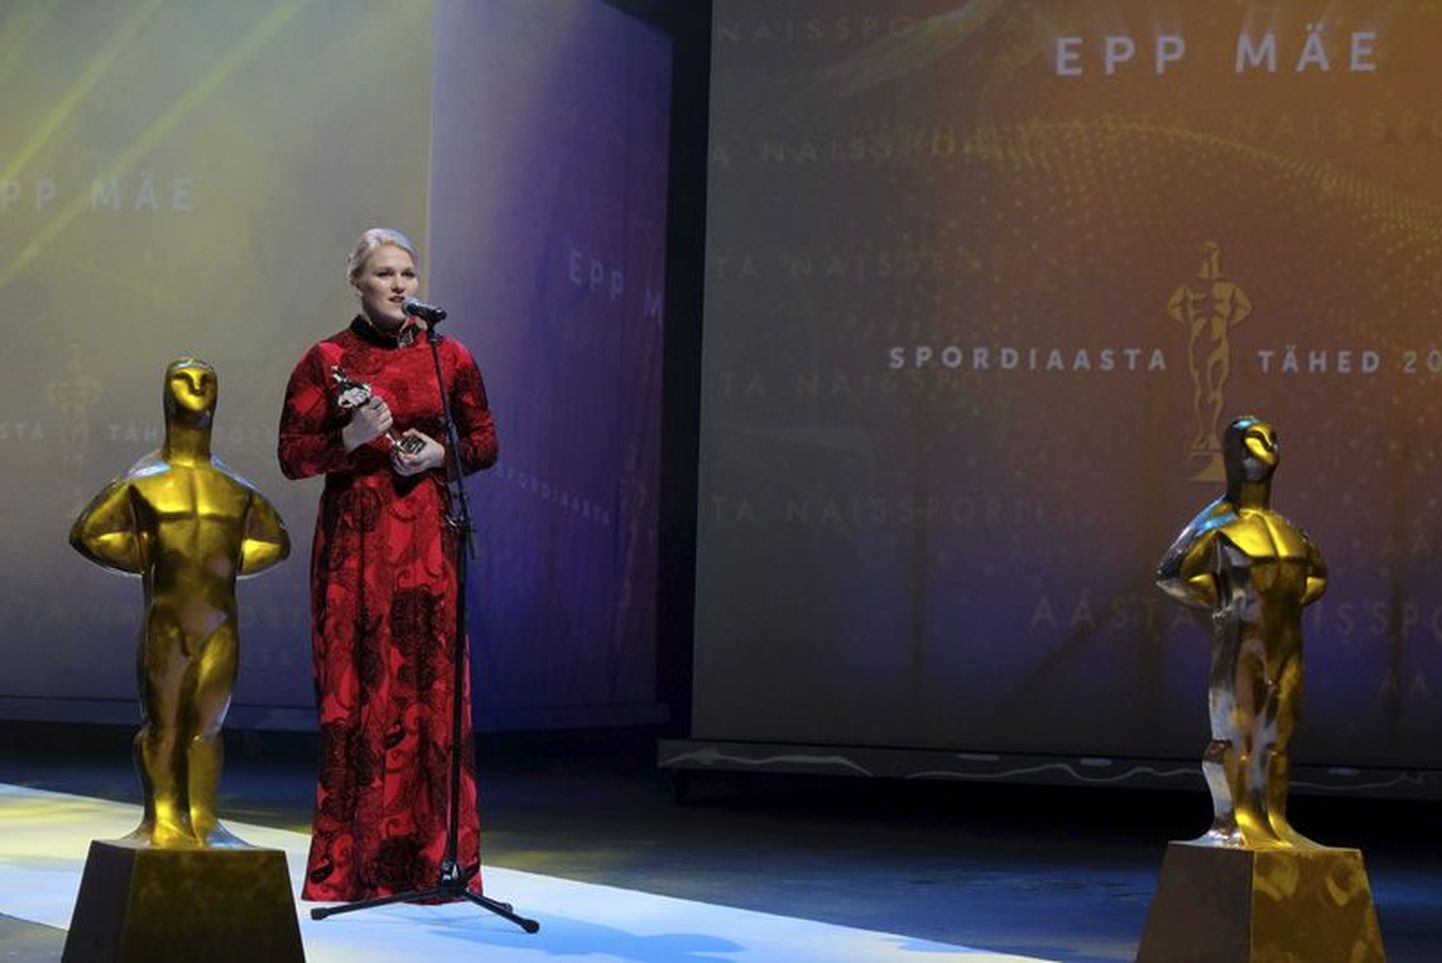 Säravaimaid sportlasi, teiste hulgas Epp Mäed, tunnustati läinud pühapäeval Nordea kontserdimajas pidulikul galal Spordiaasta Tähed.